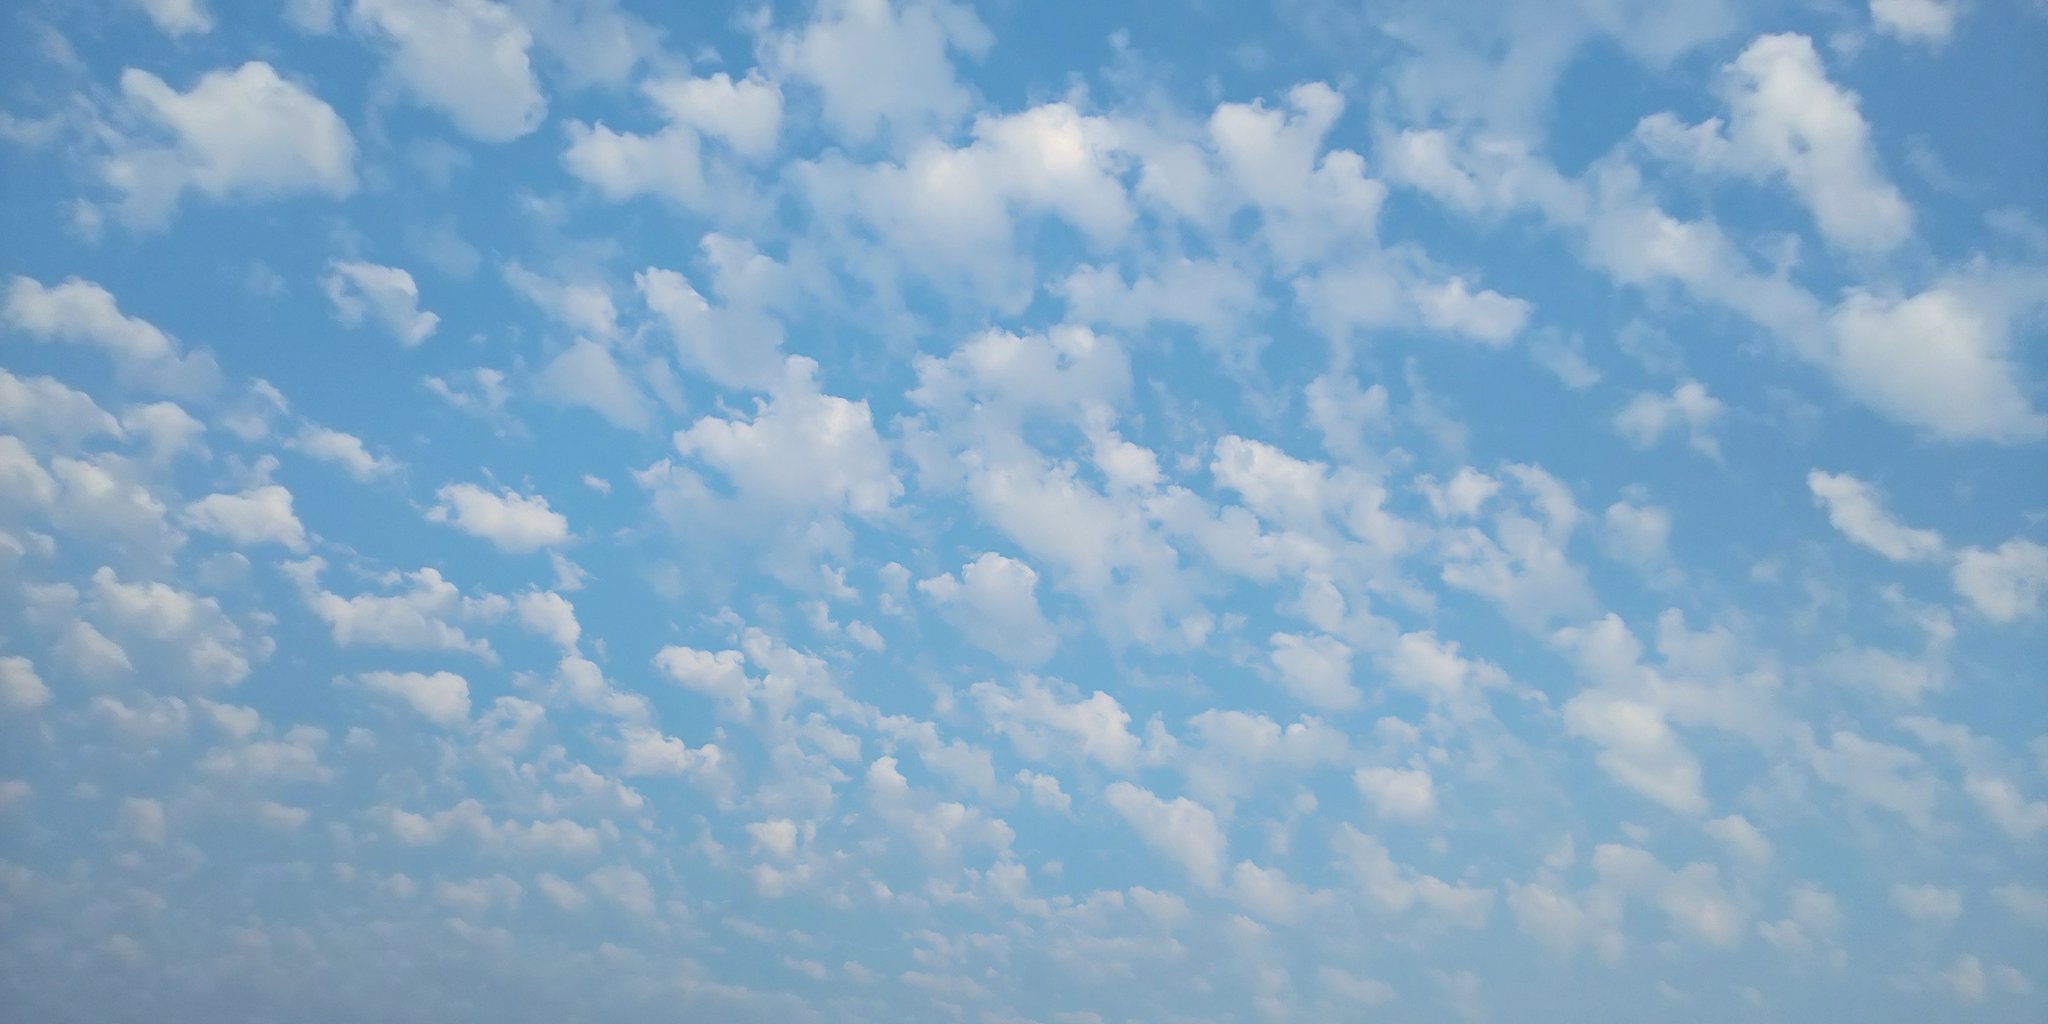 なゆ Pcの壁紙にありそうな 雲が空に浮かんでる なんか可愛い 海老名フォト T Co 9ew7fb8una Twitter